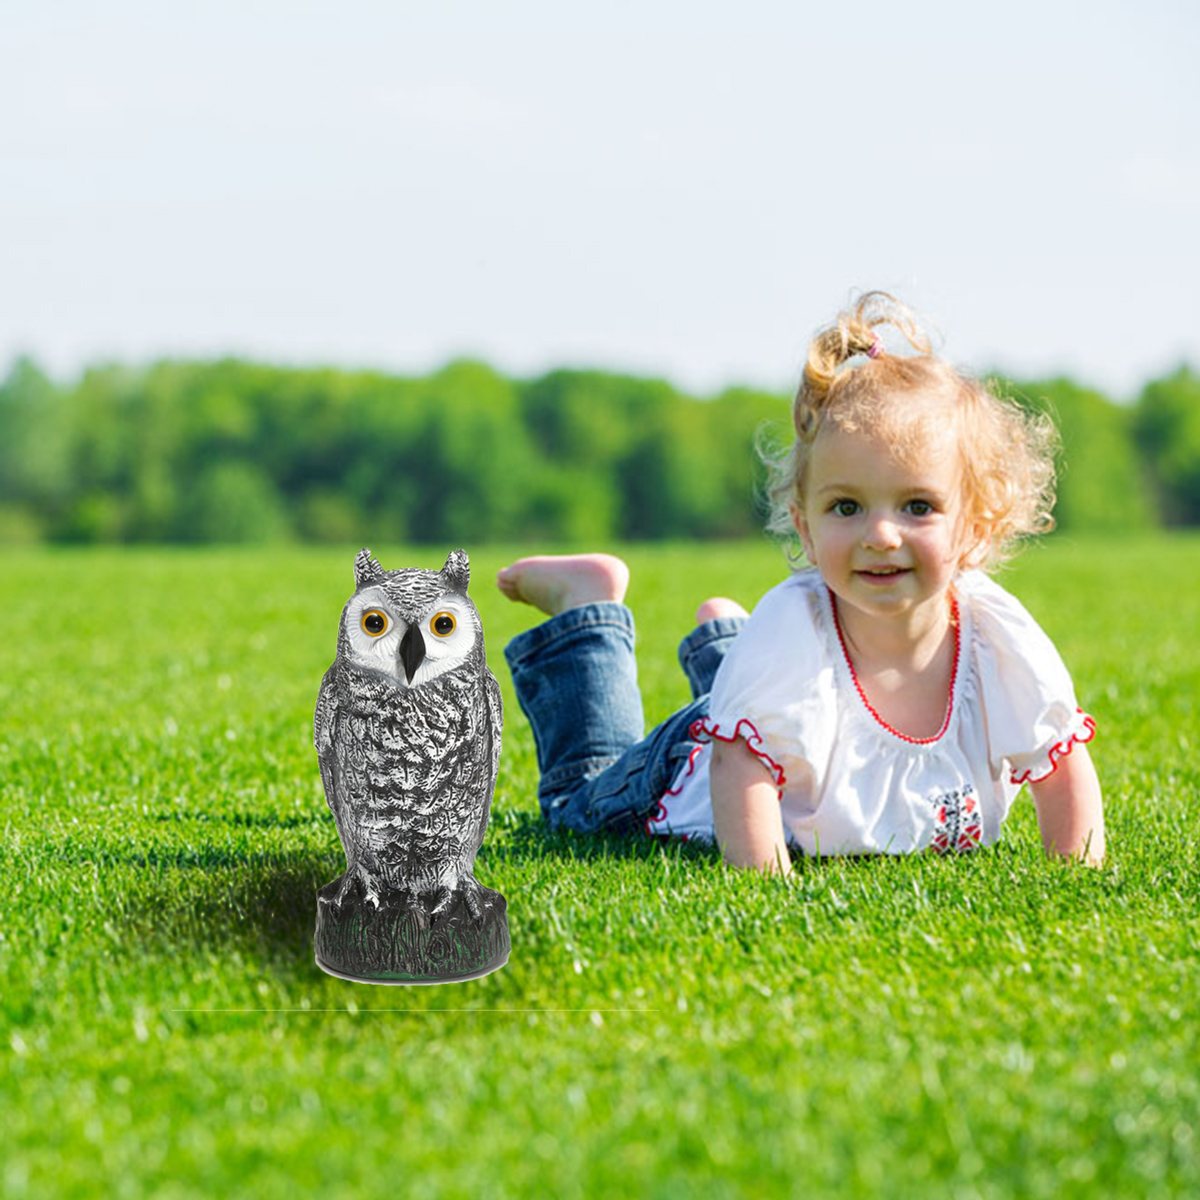 Plastic-Standing-Fake-Owl-Hunting-Decoy-Deterrent-Scarer-Repeller-Garden-Decor-1243366-8